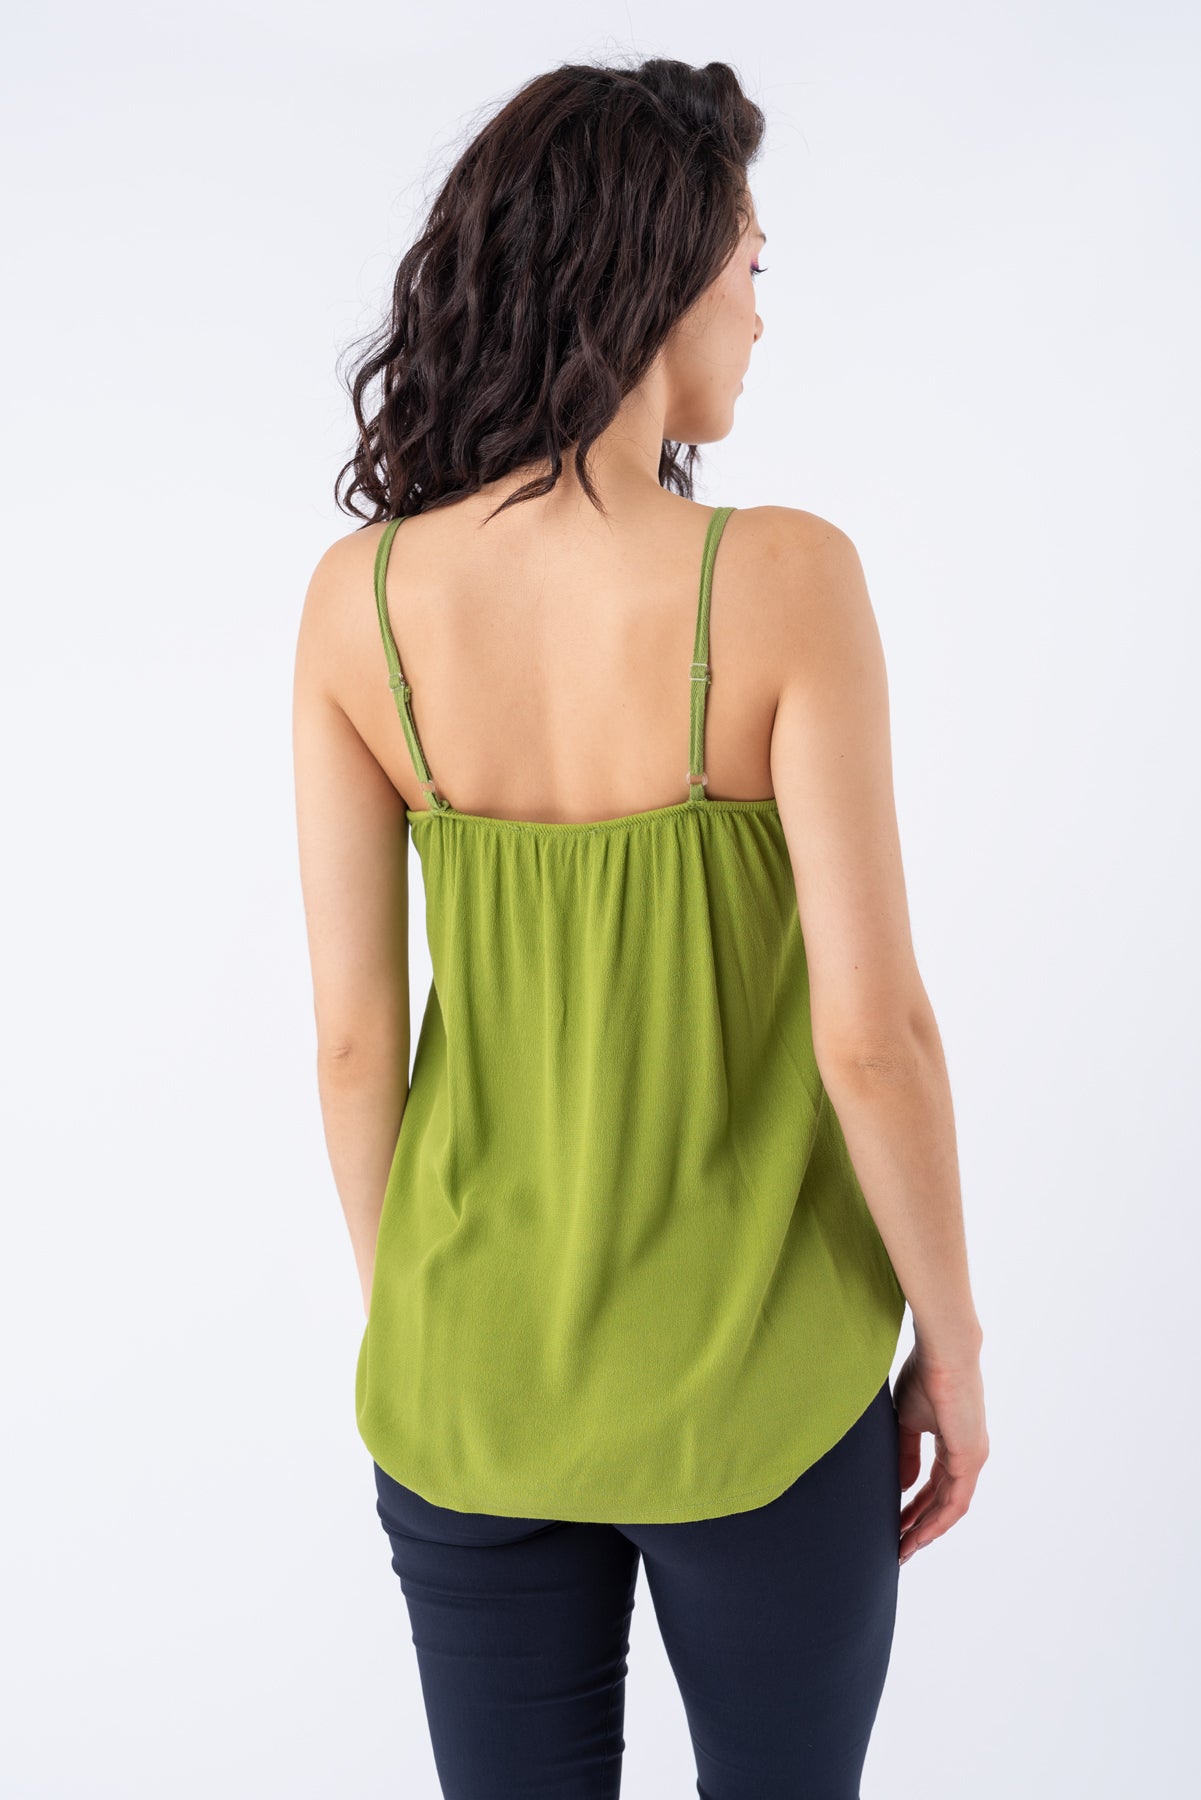 Musculosa Satén Verde | Blusas, Camisas y Remeras | Viviana Méndez - 